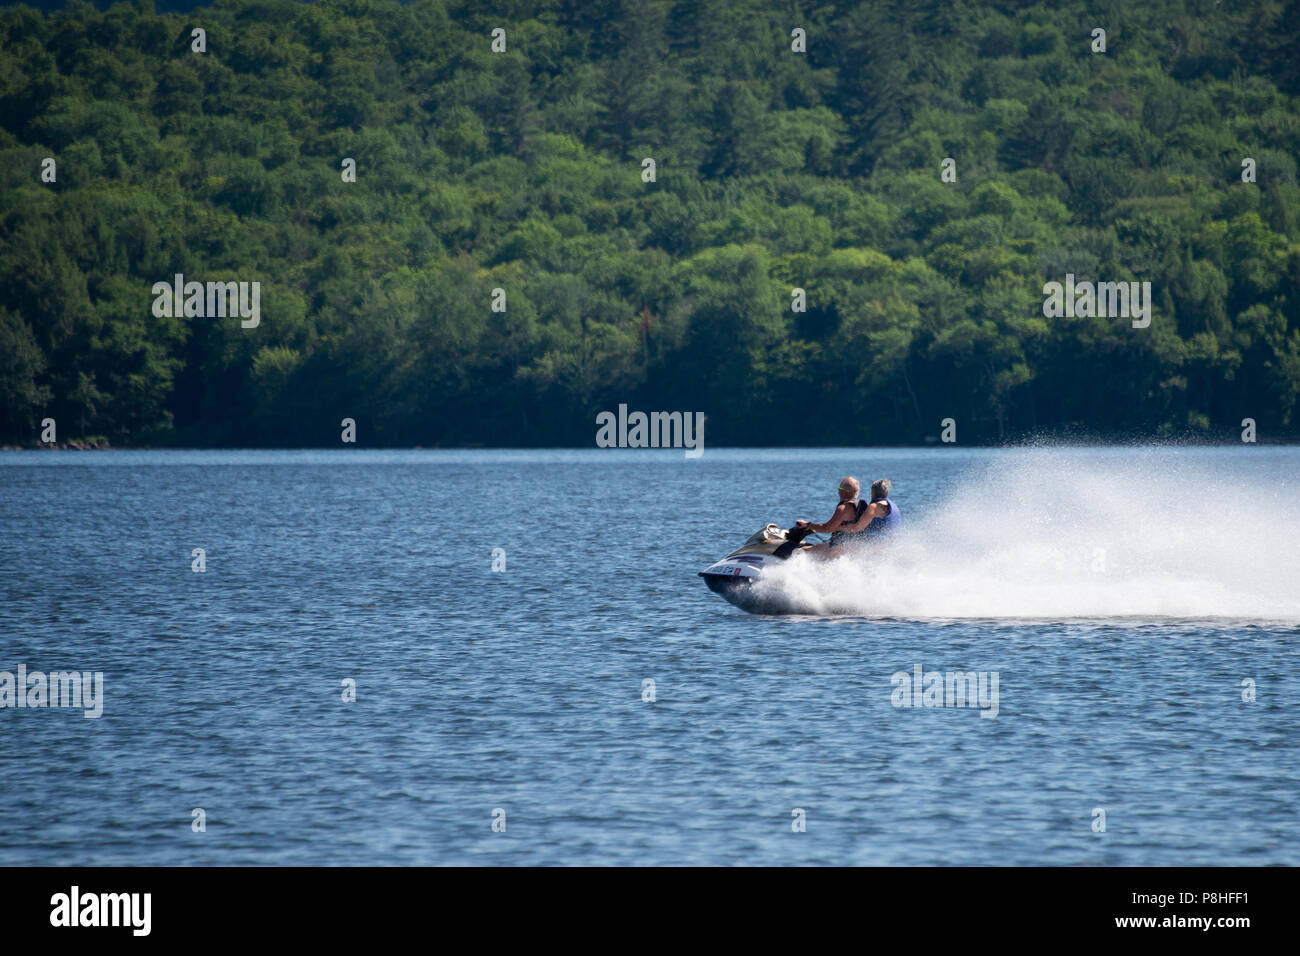 Eine schnelle Jet angetriebenen Wasserfahrzeuge überfliegen das Wasser der See angenehm, NEW YORK in den Adirondack Mountains. Stockfoto